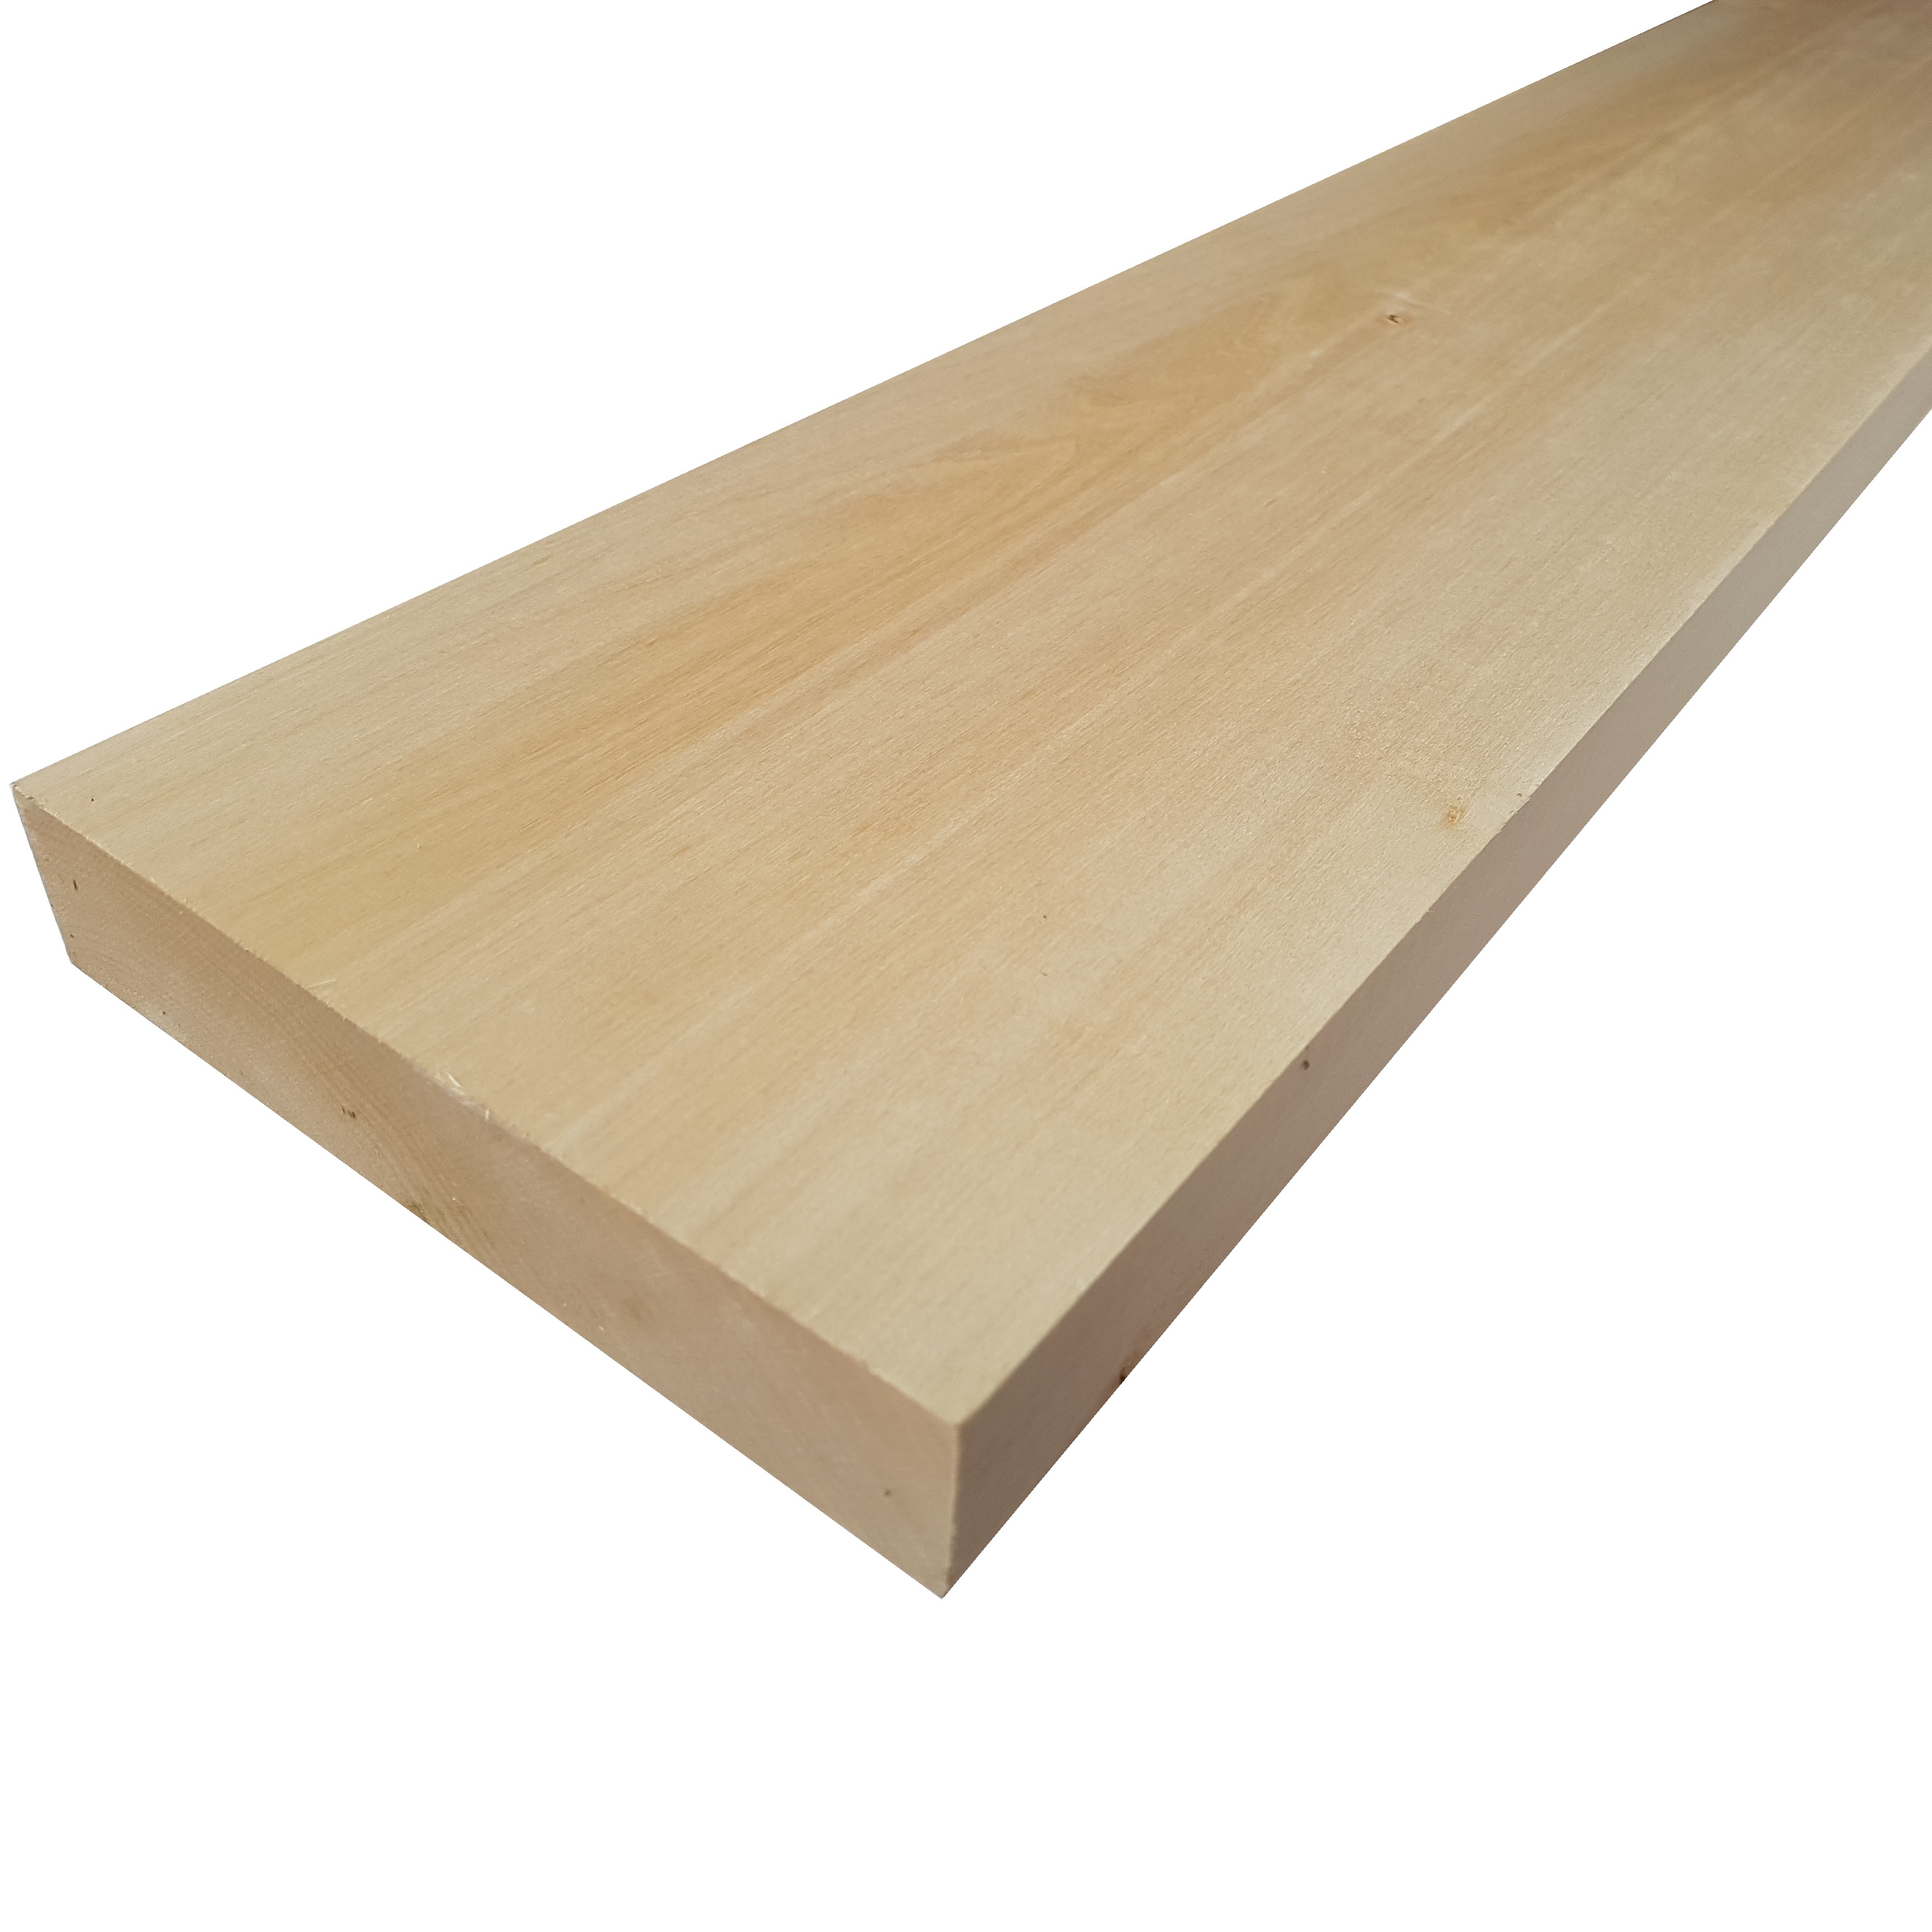 25 x 0,5 x 0,5 x 0,5 cm modello non finito bastoni di legno quadrati per lavori fai da te TSKDKIT 30 bastoncini quadrati in legno di tiglio per tasselli quadrati in legno di tiglio 